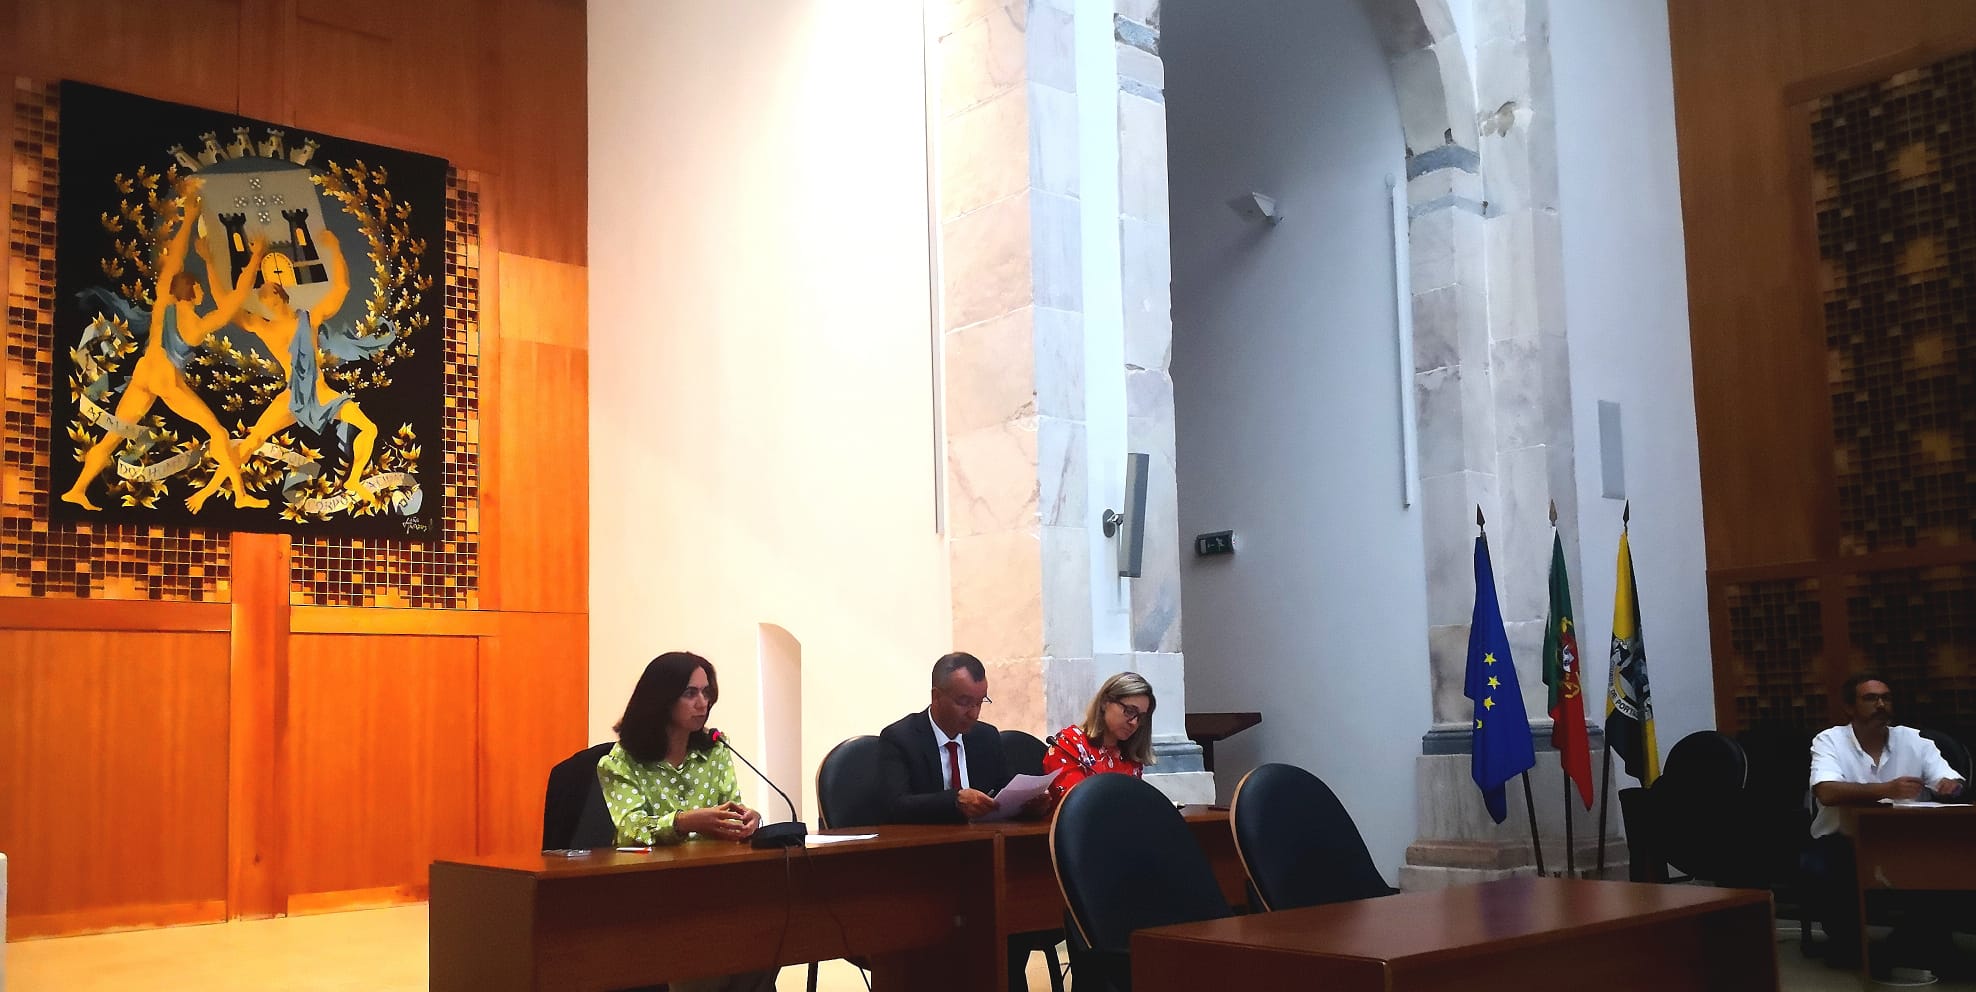 Câmara Municipal de Portalegre assina Contratos-Programa com cerca de 40 associações culturais e desportivas do concelho